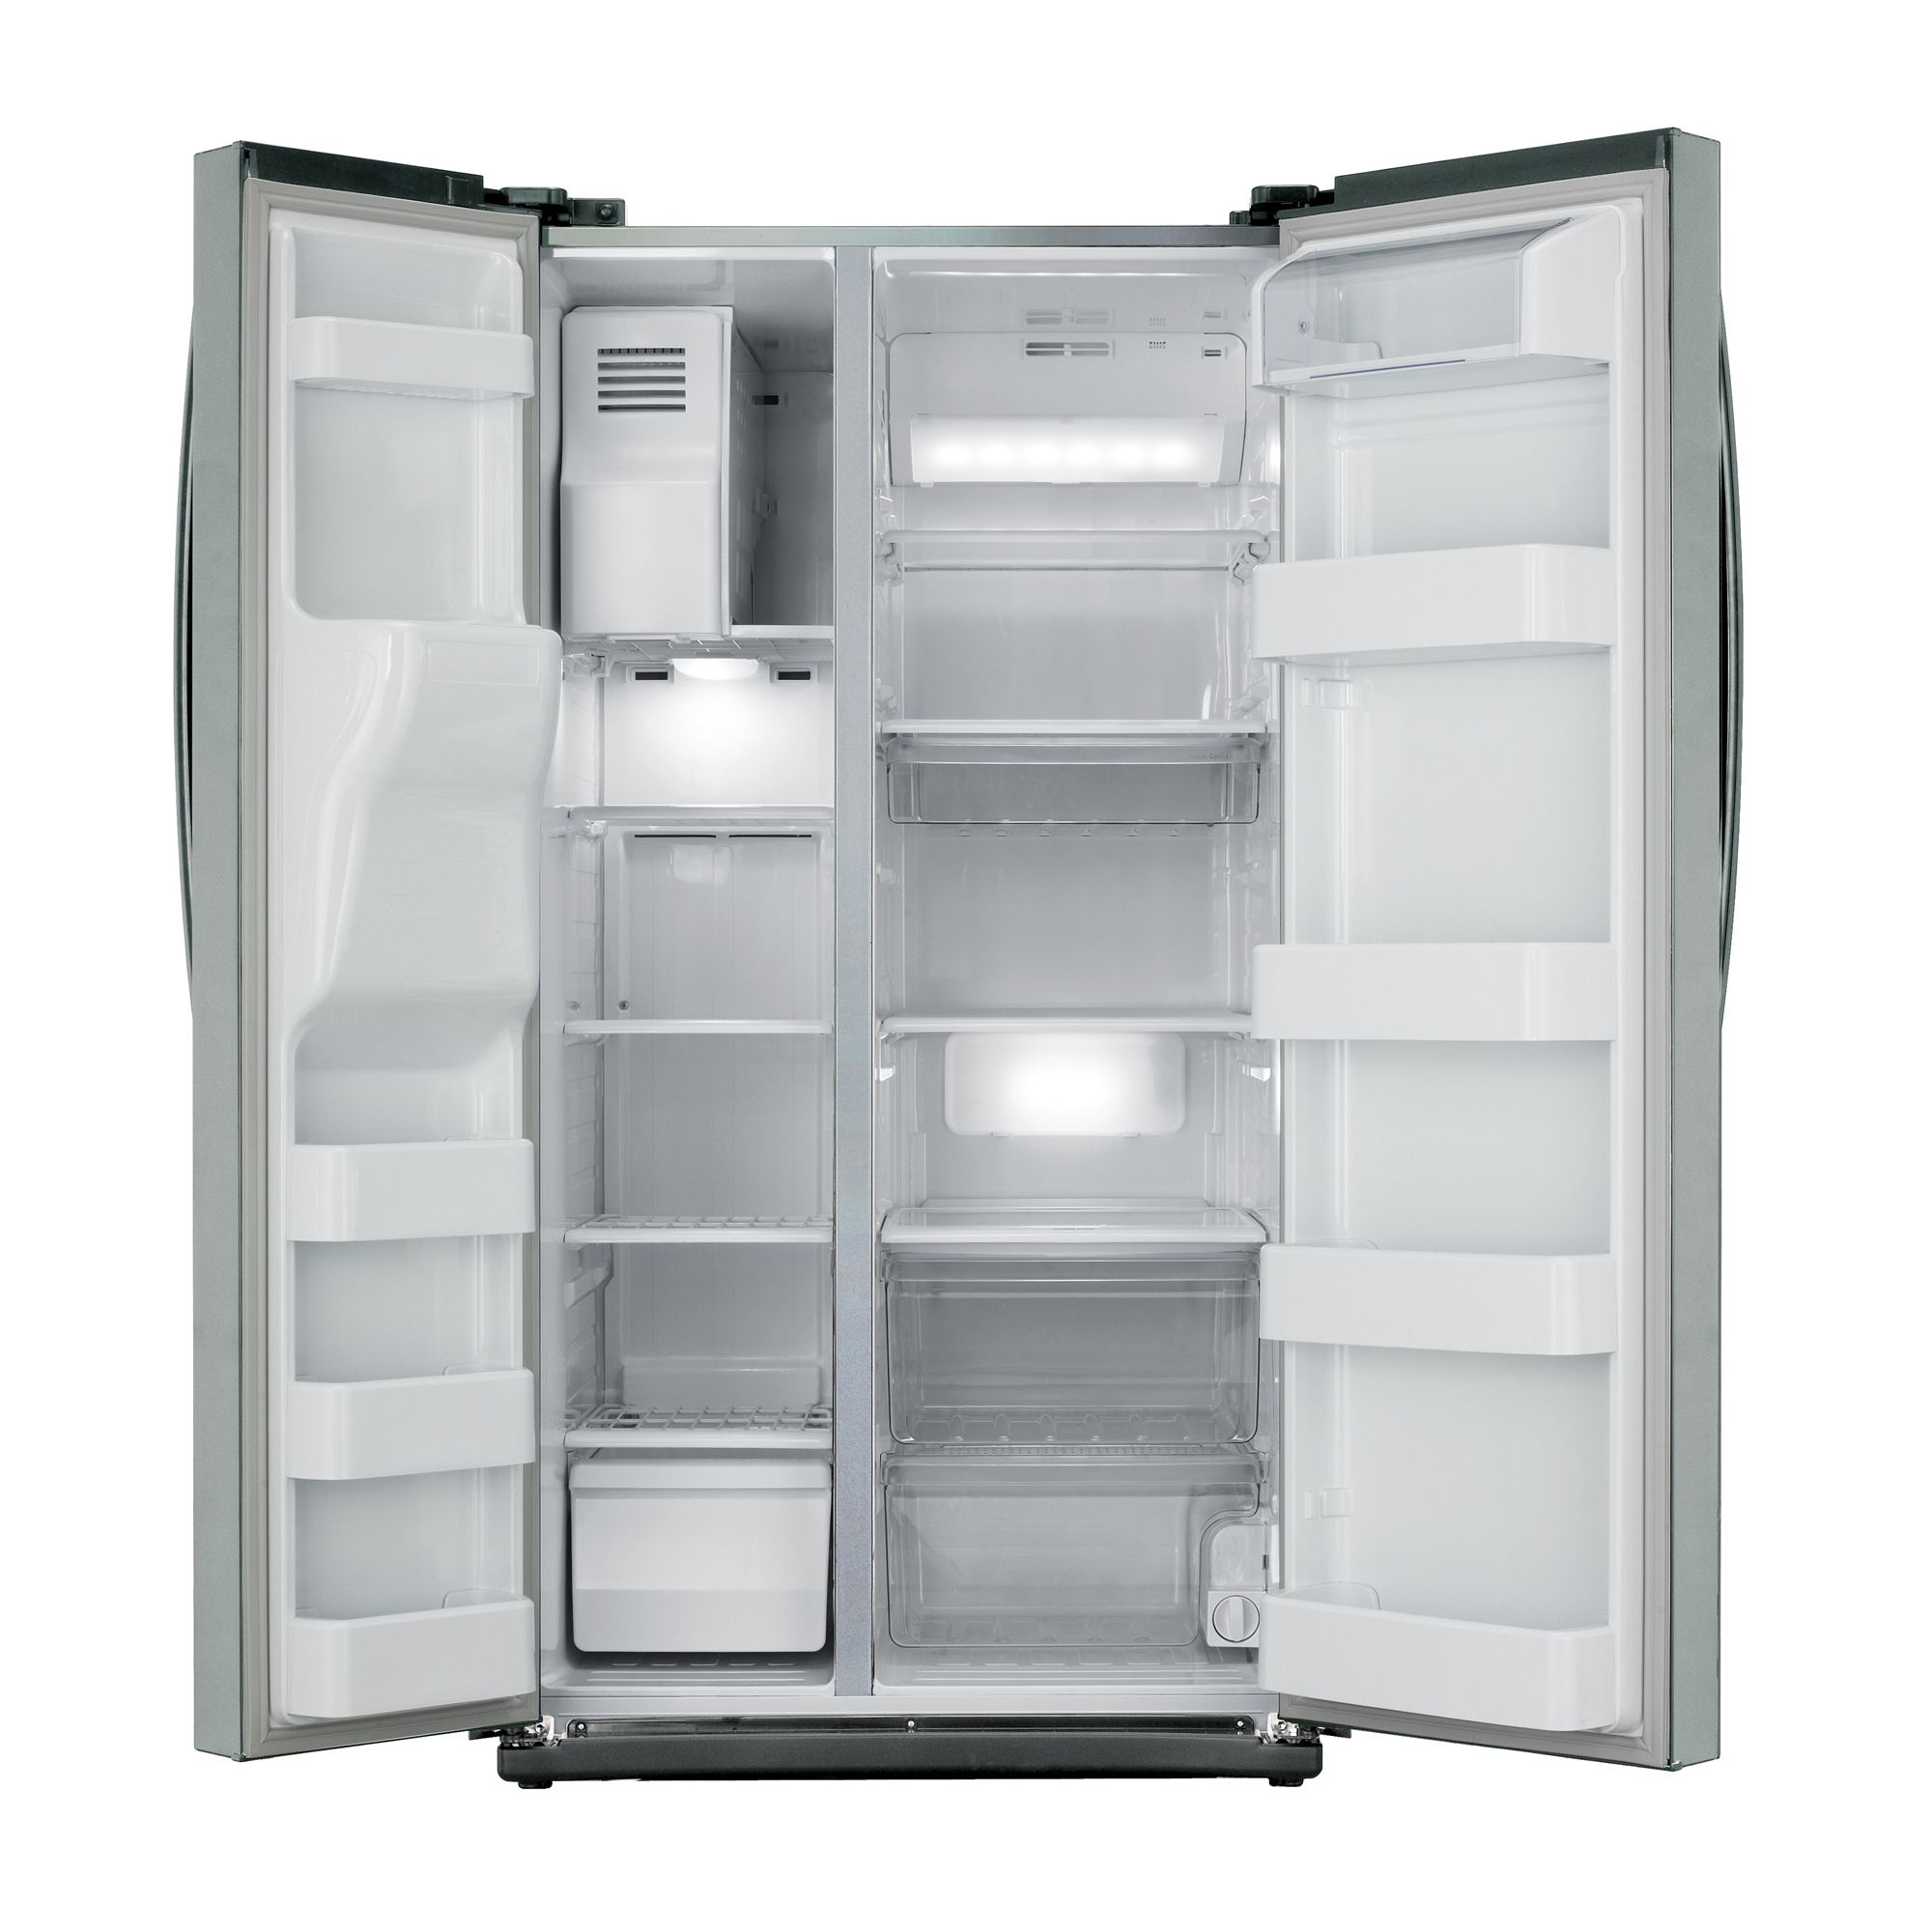 Samsung Rs261Mdas Refrigerator Reviews pour Samsung Fridge 